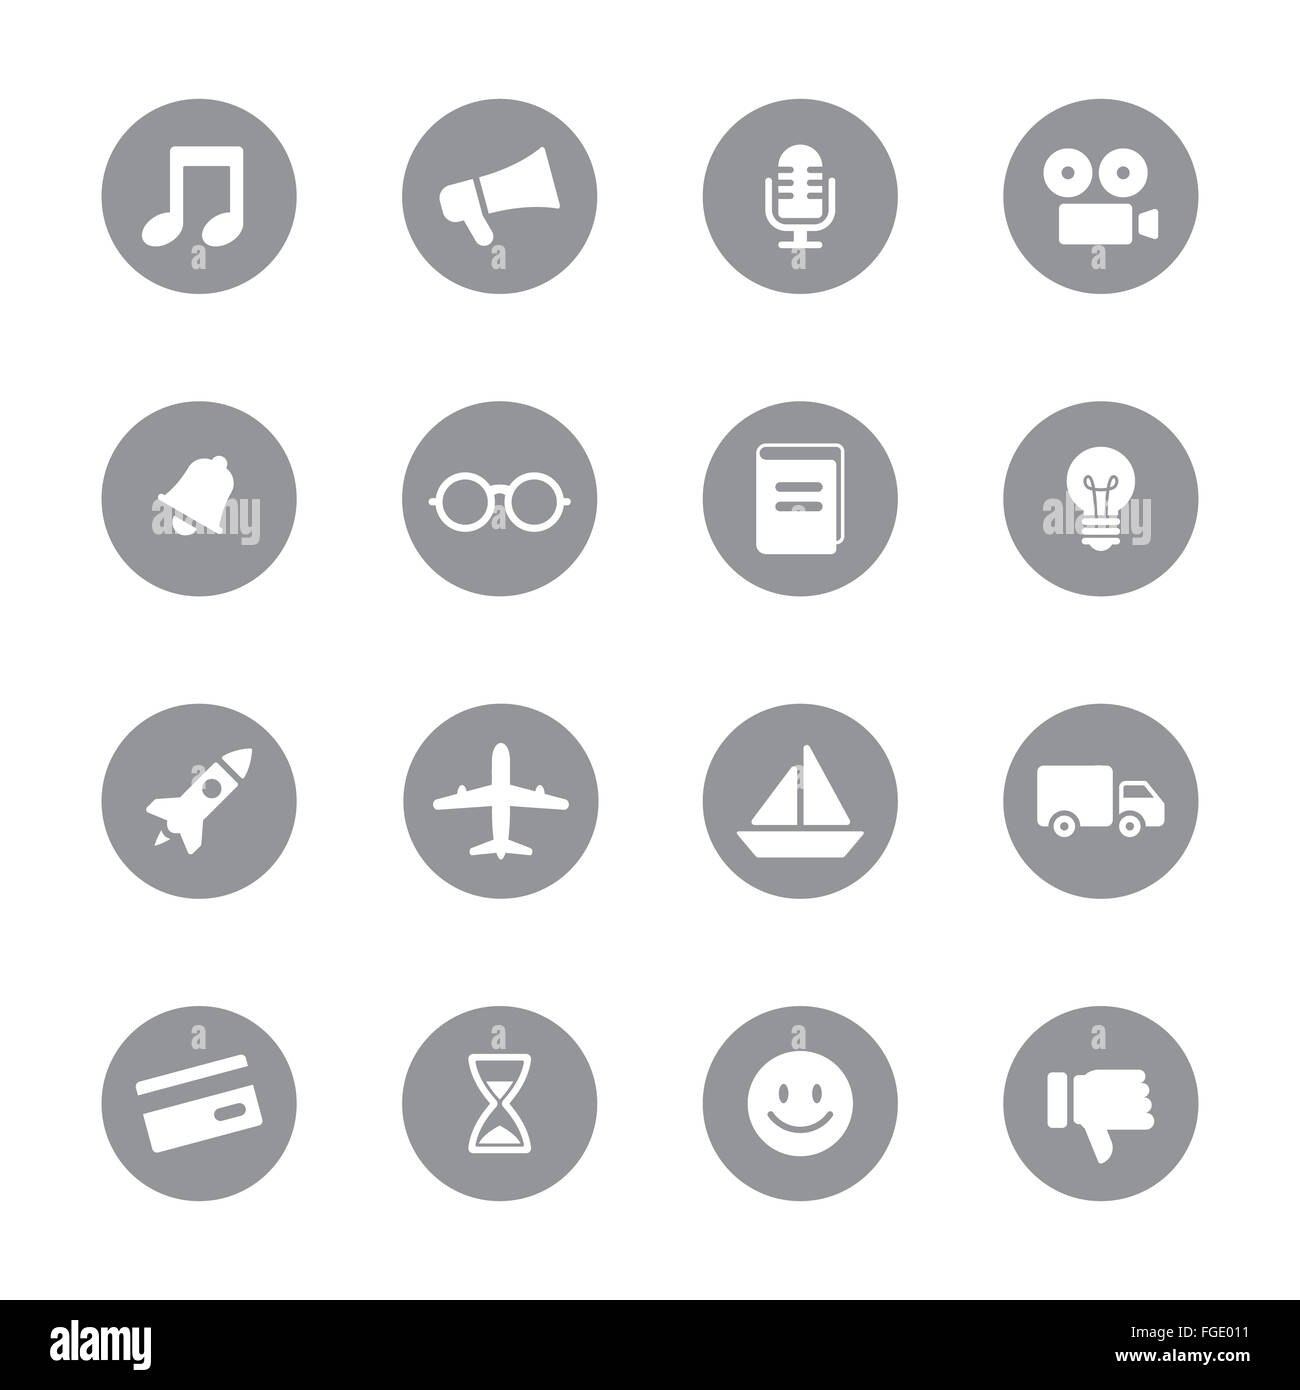 [JPEG] web icon set sur 5 cercle gris pour le web design, l'interface utilisateur (IU), l'infographie et de l'application mobile (apps) Banque D'Images